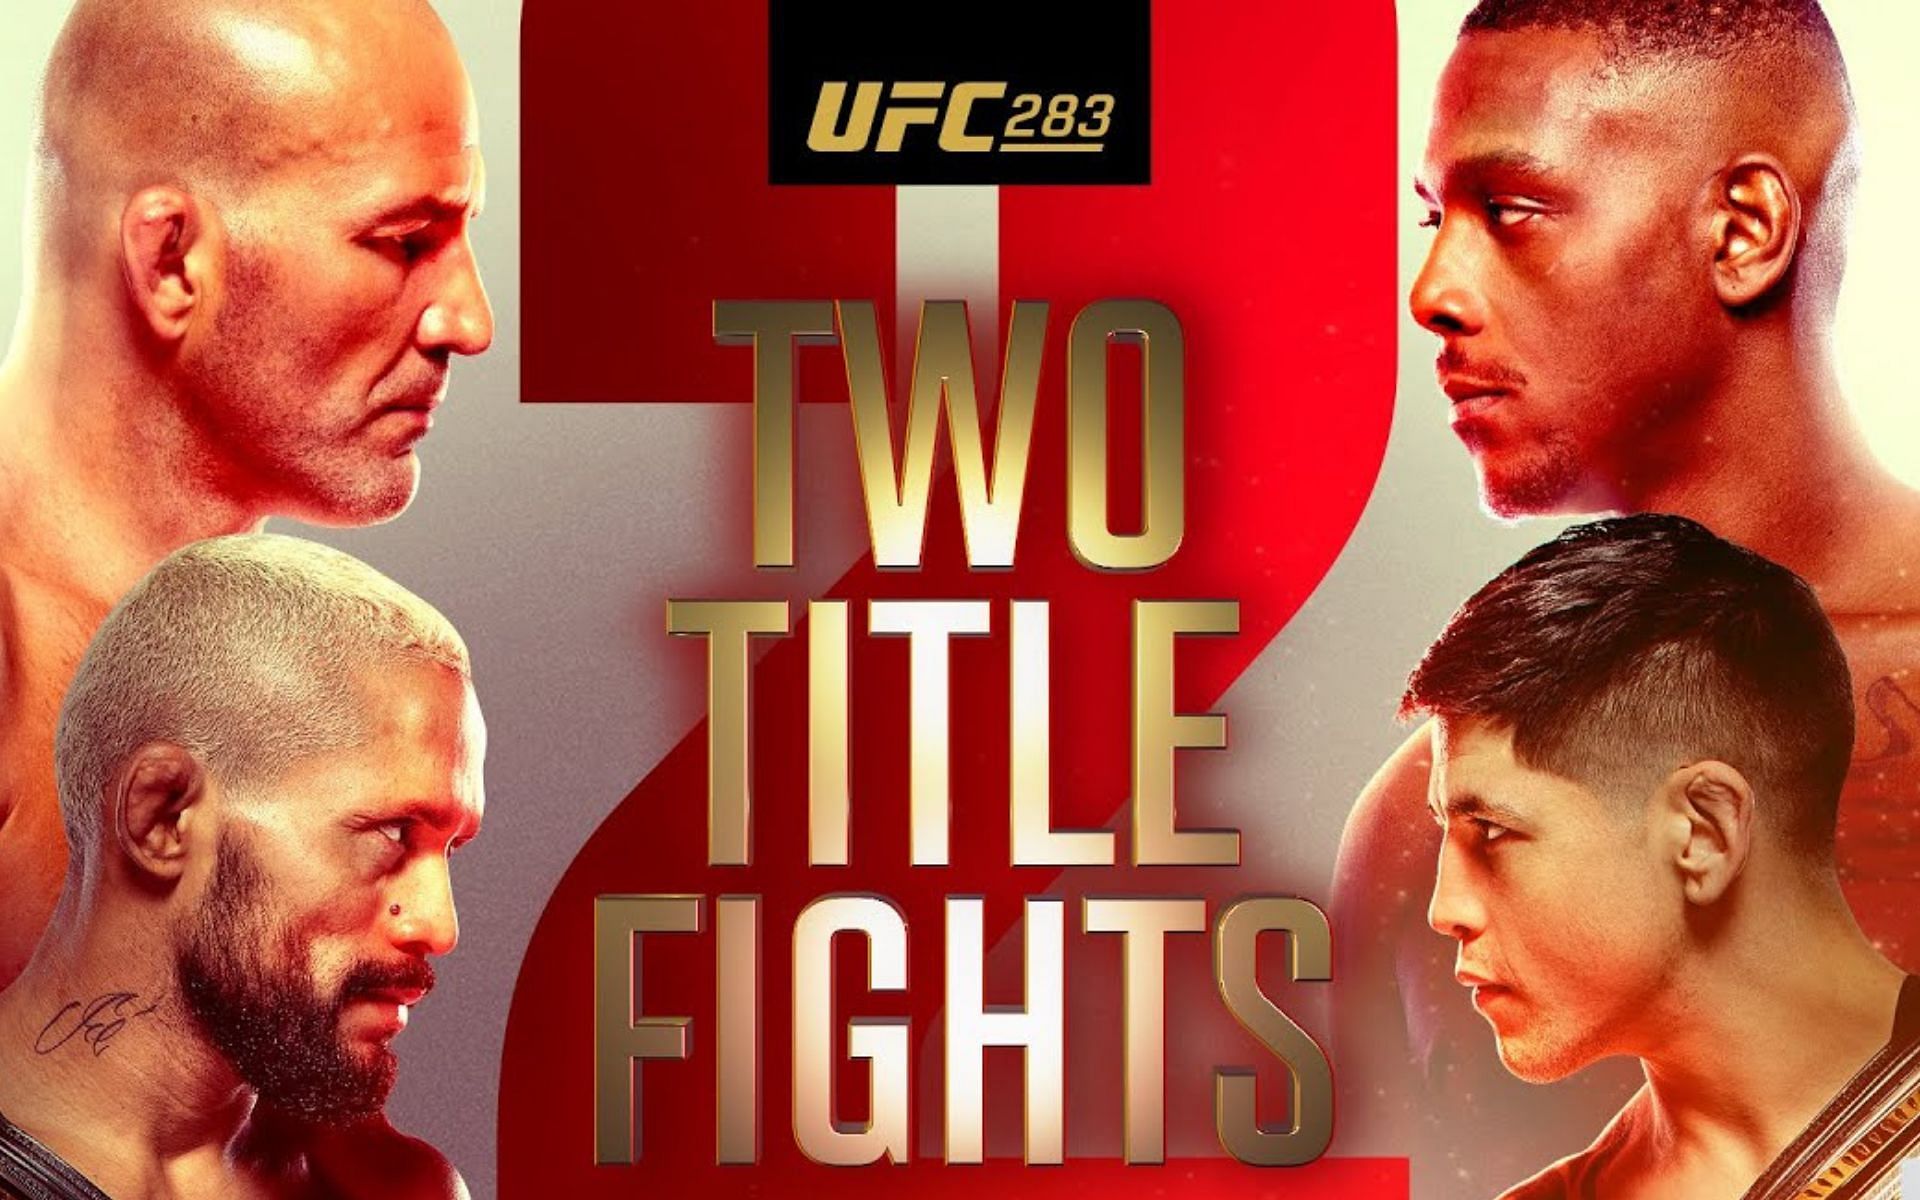 UFC 283: Teixeira vs. Hill [Image courtesy: UFC via YouTube]